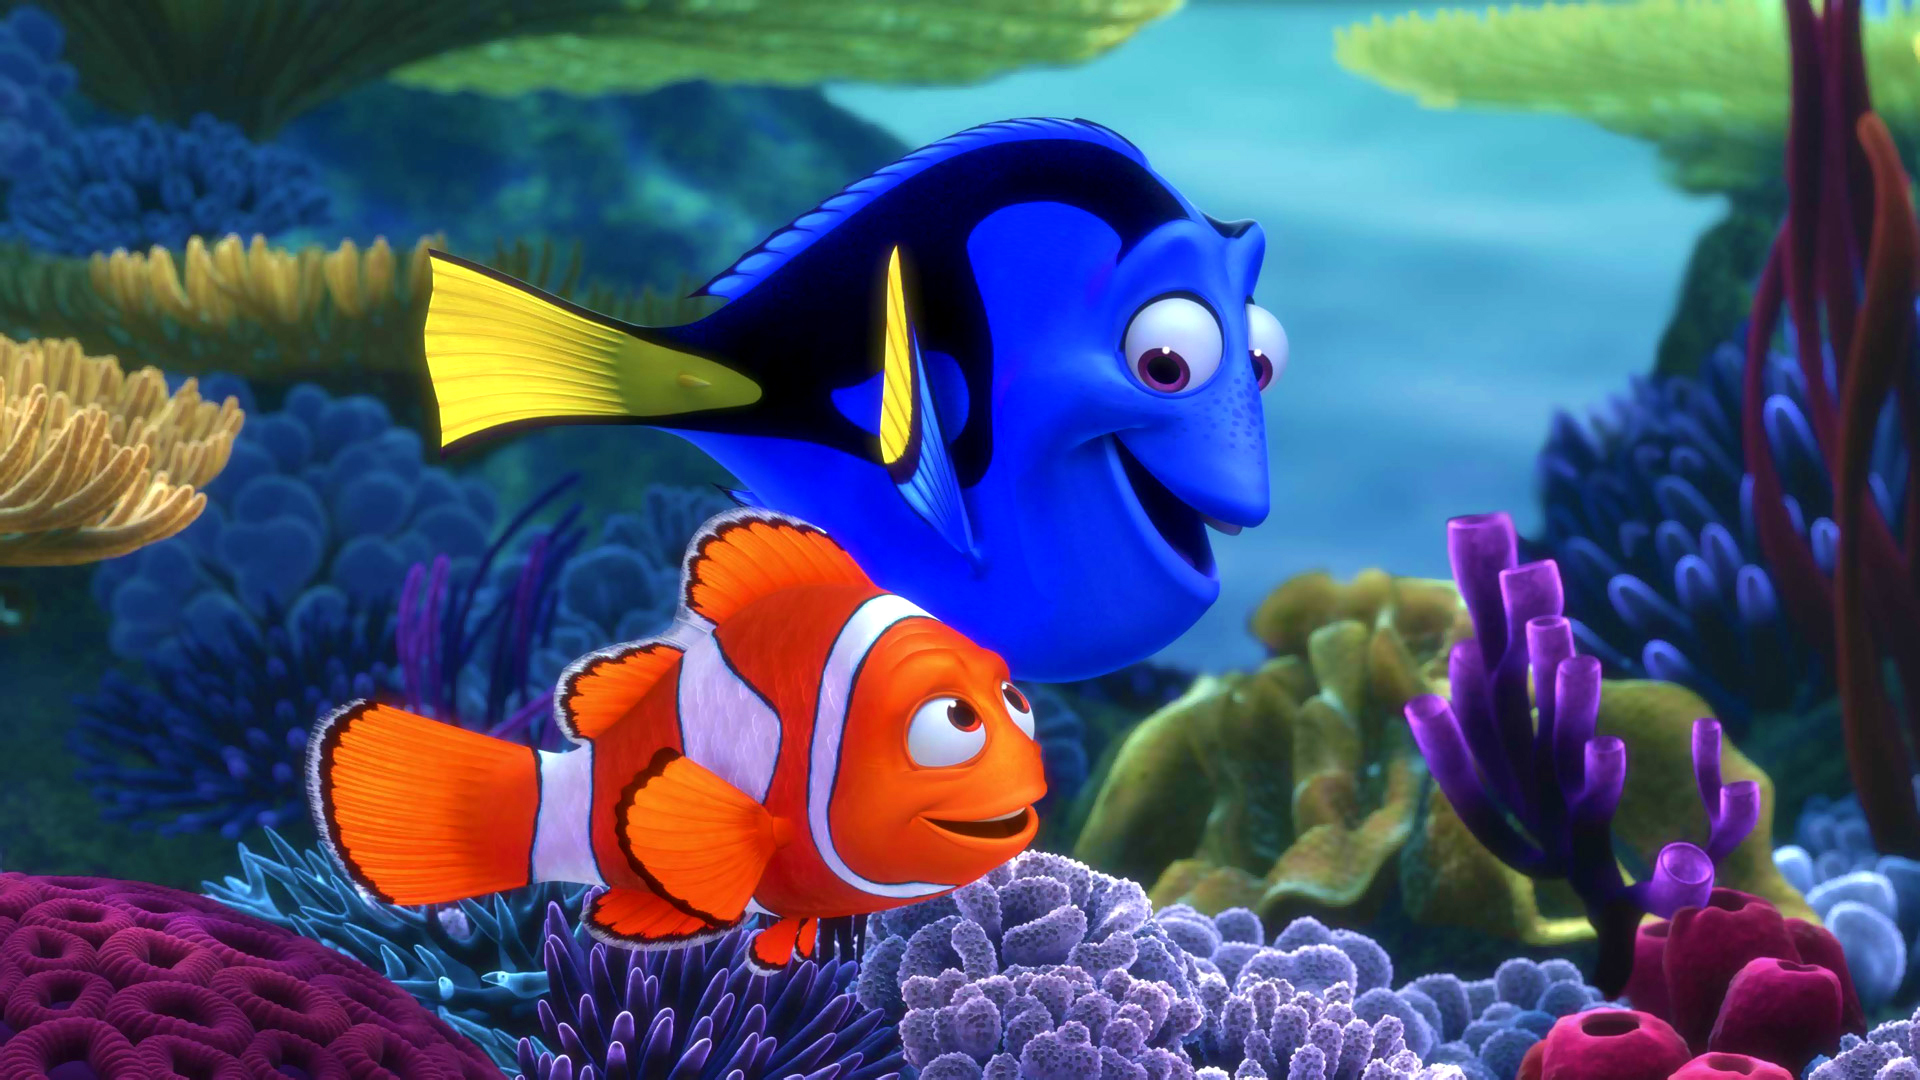 Finding Nemo Puter Wallpaper Desktop Background Id